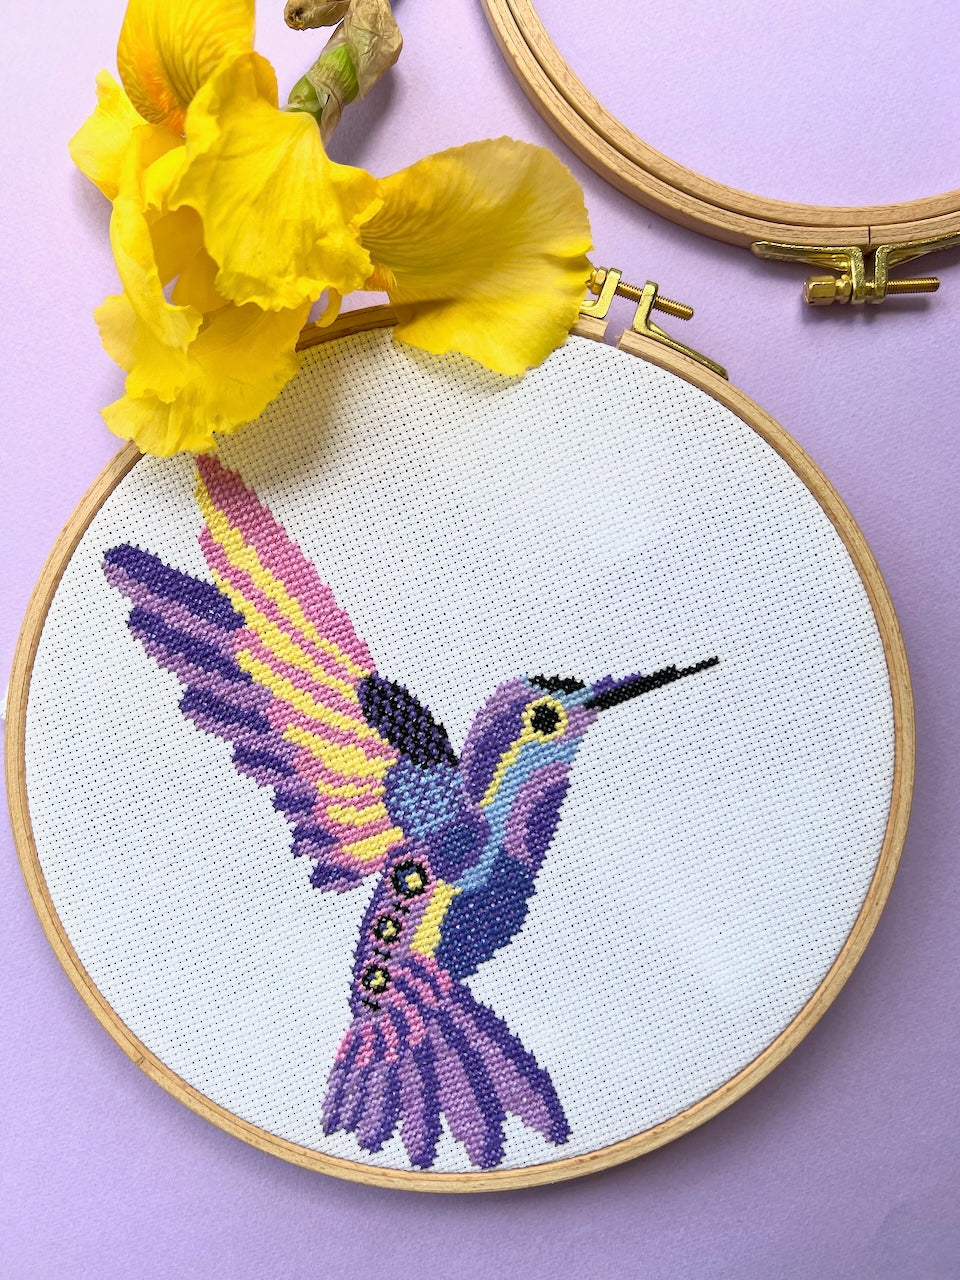 Hummingbird - cross stitch pattern